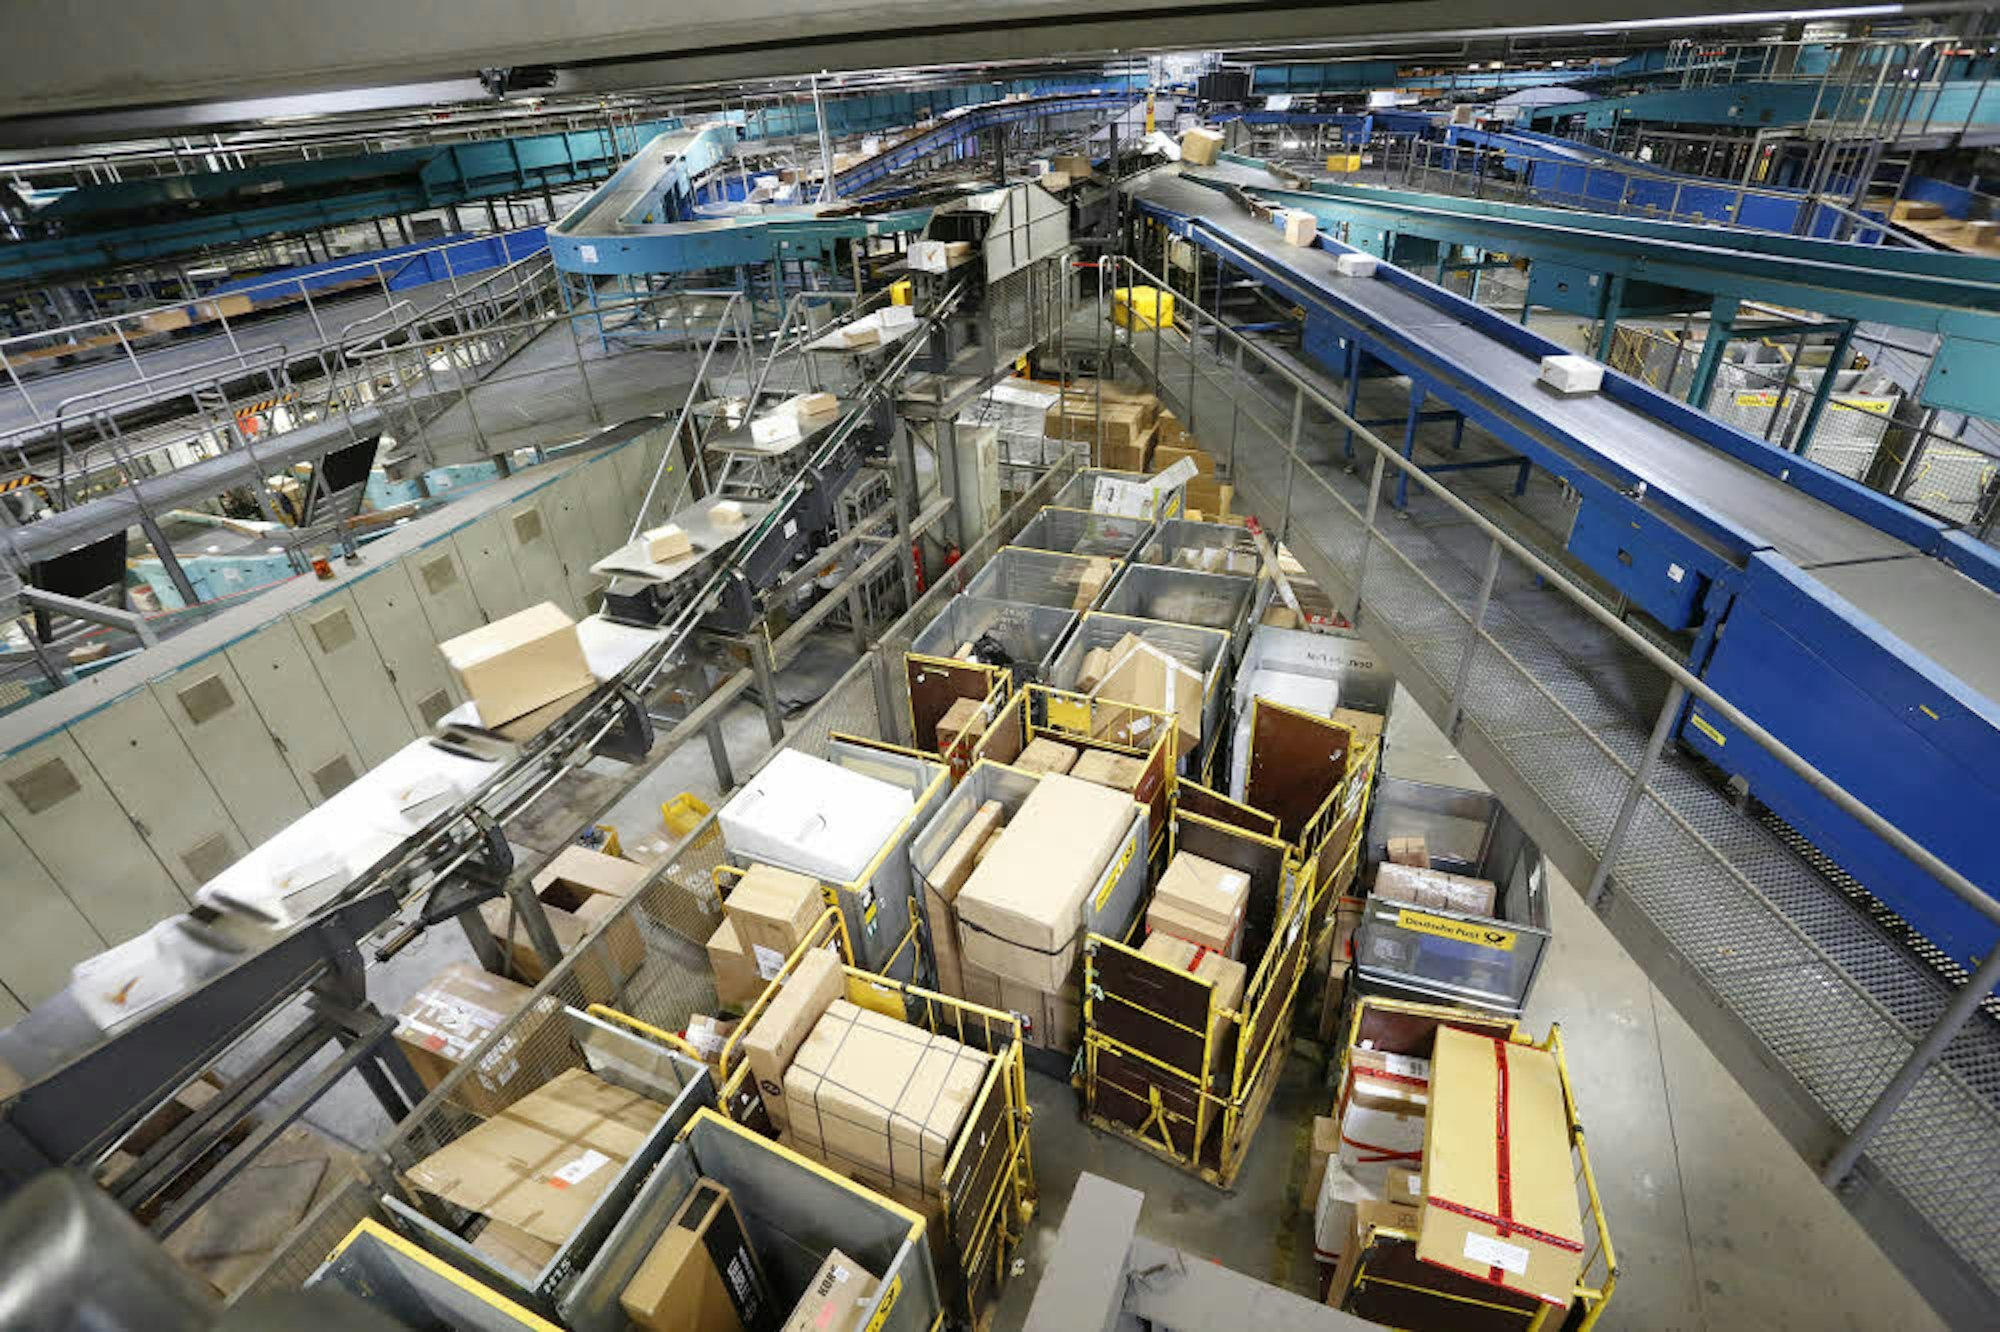 Aus dem Nationalen Paketzentrum der Deutschen Post am Eifeltor werden Pakete nach Deutschland und in die Benelux-Staaten geliefert.